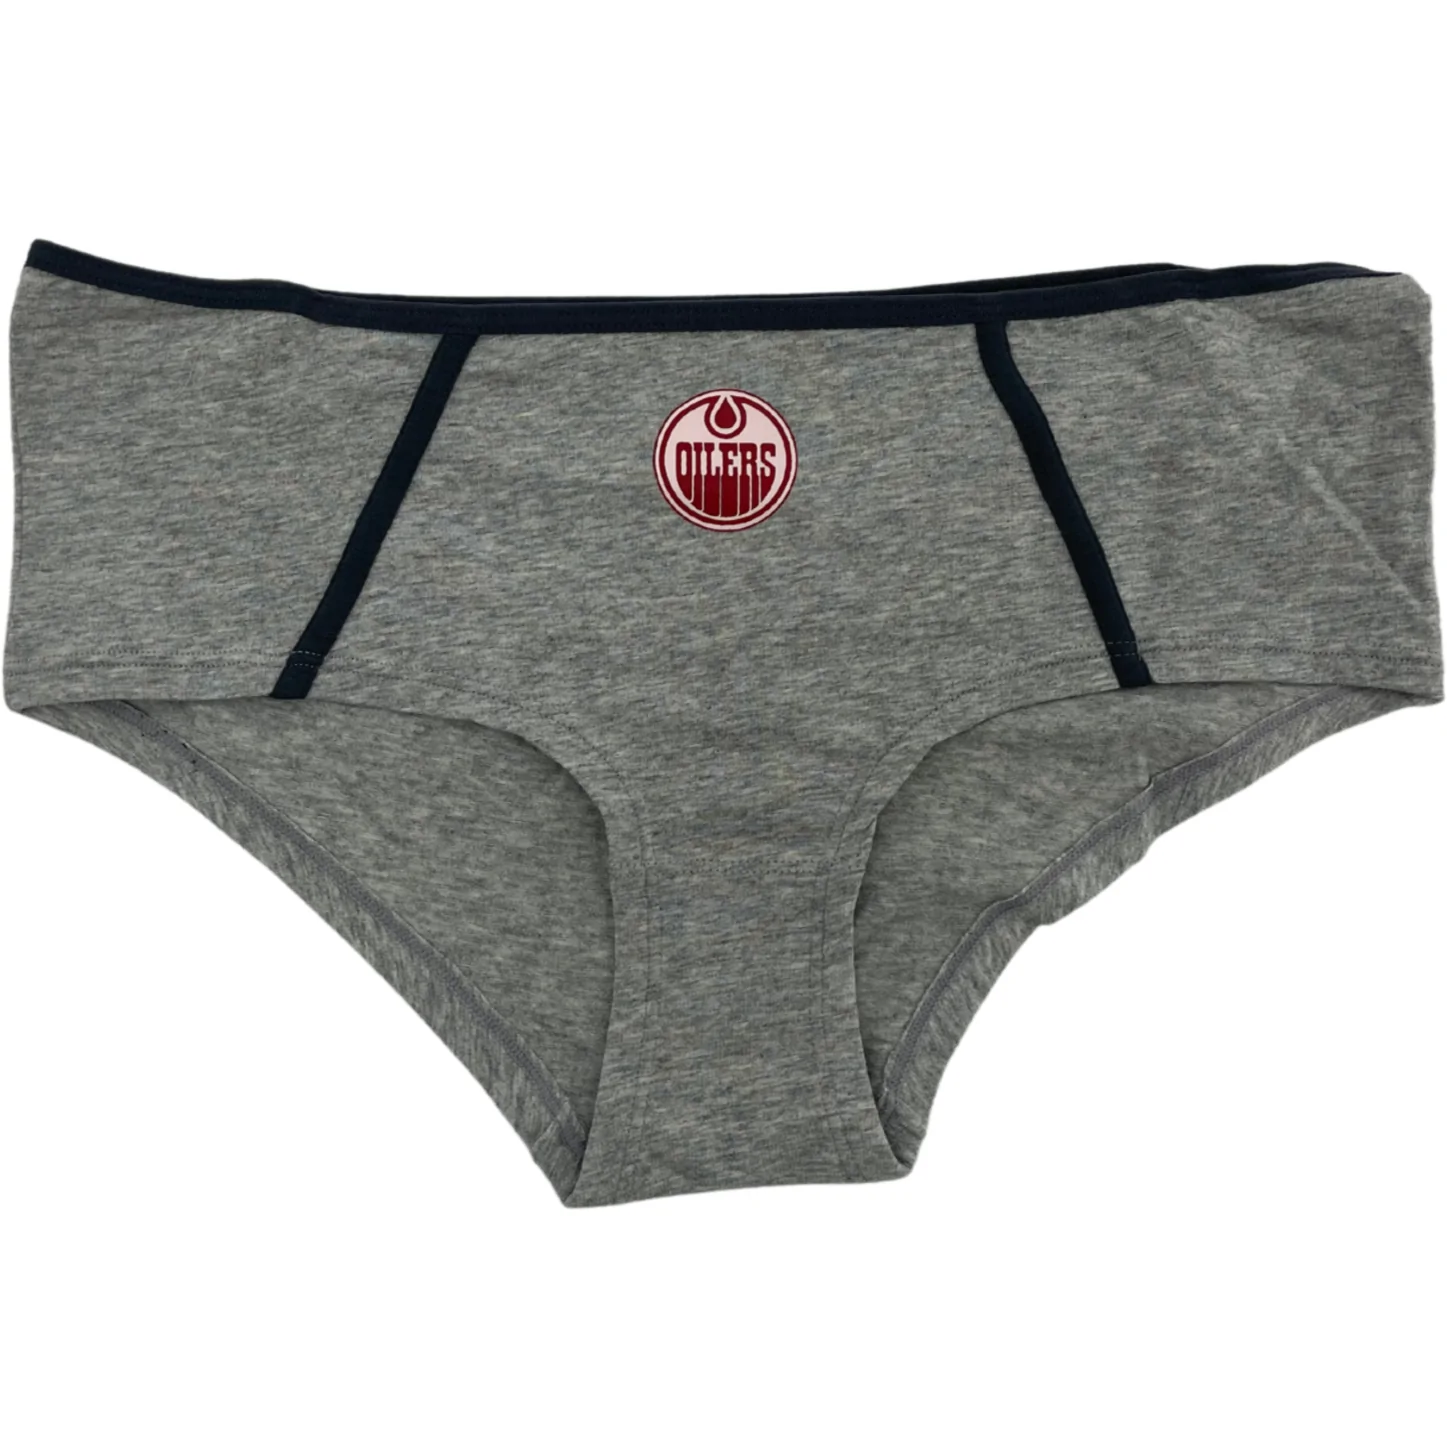 NHL Edmonton Oilers Ladies Boycut Underwear / 2 Pack / Panties / Red & Grey / Edmonton Oilers Logo / Various Sizes